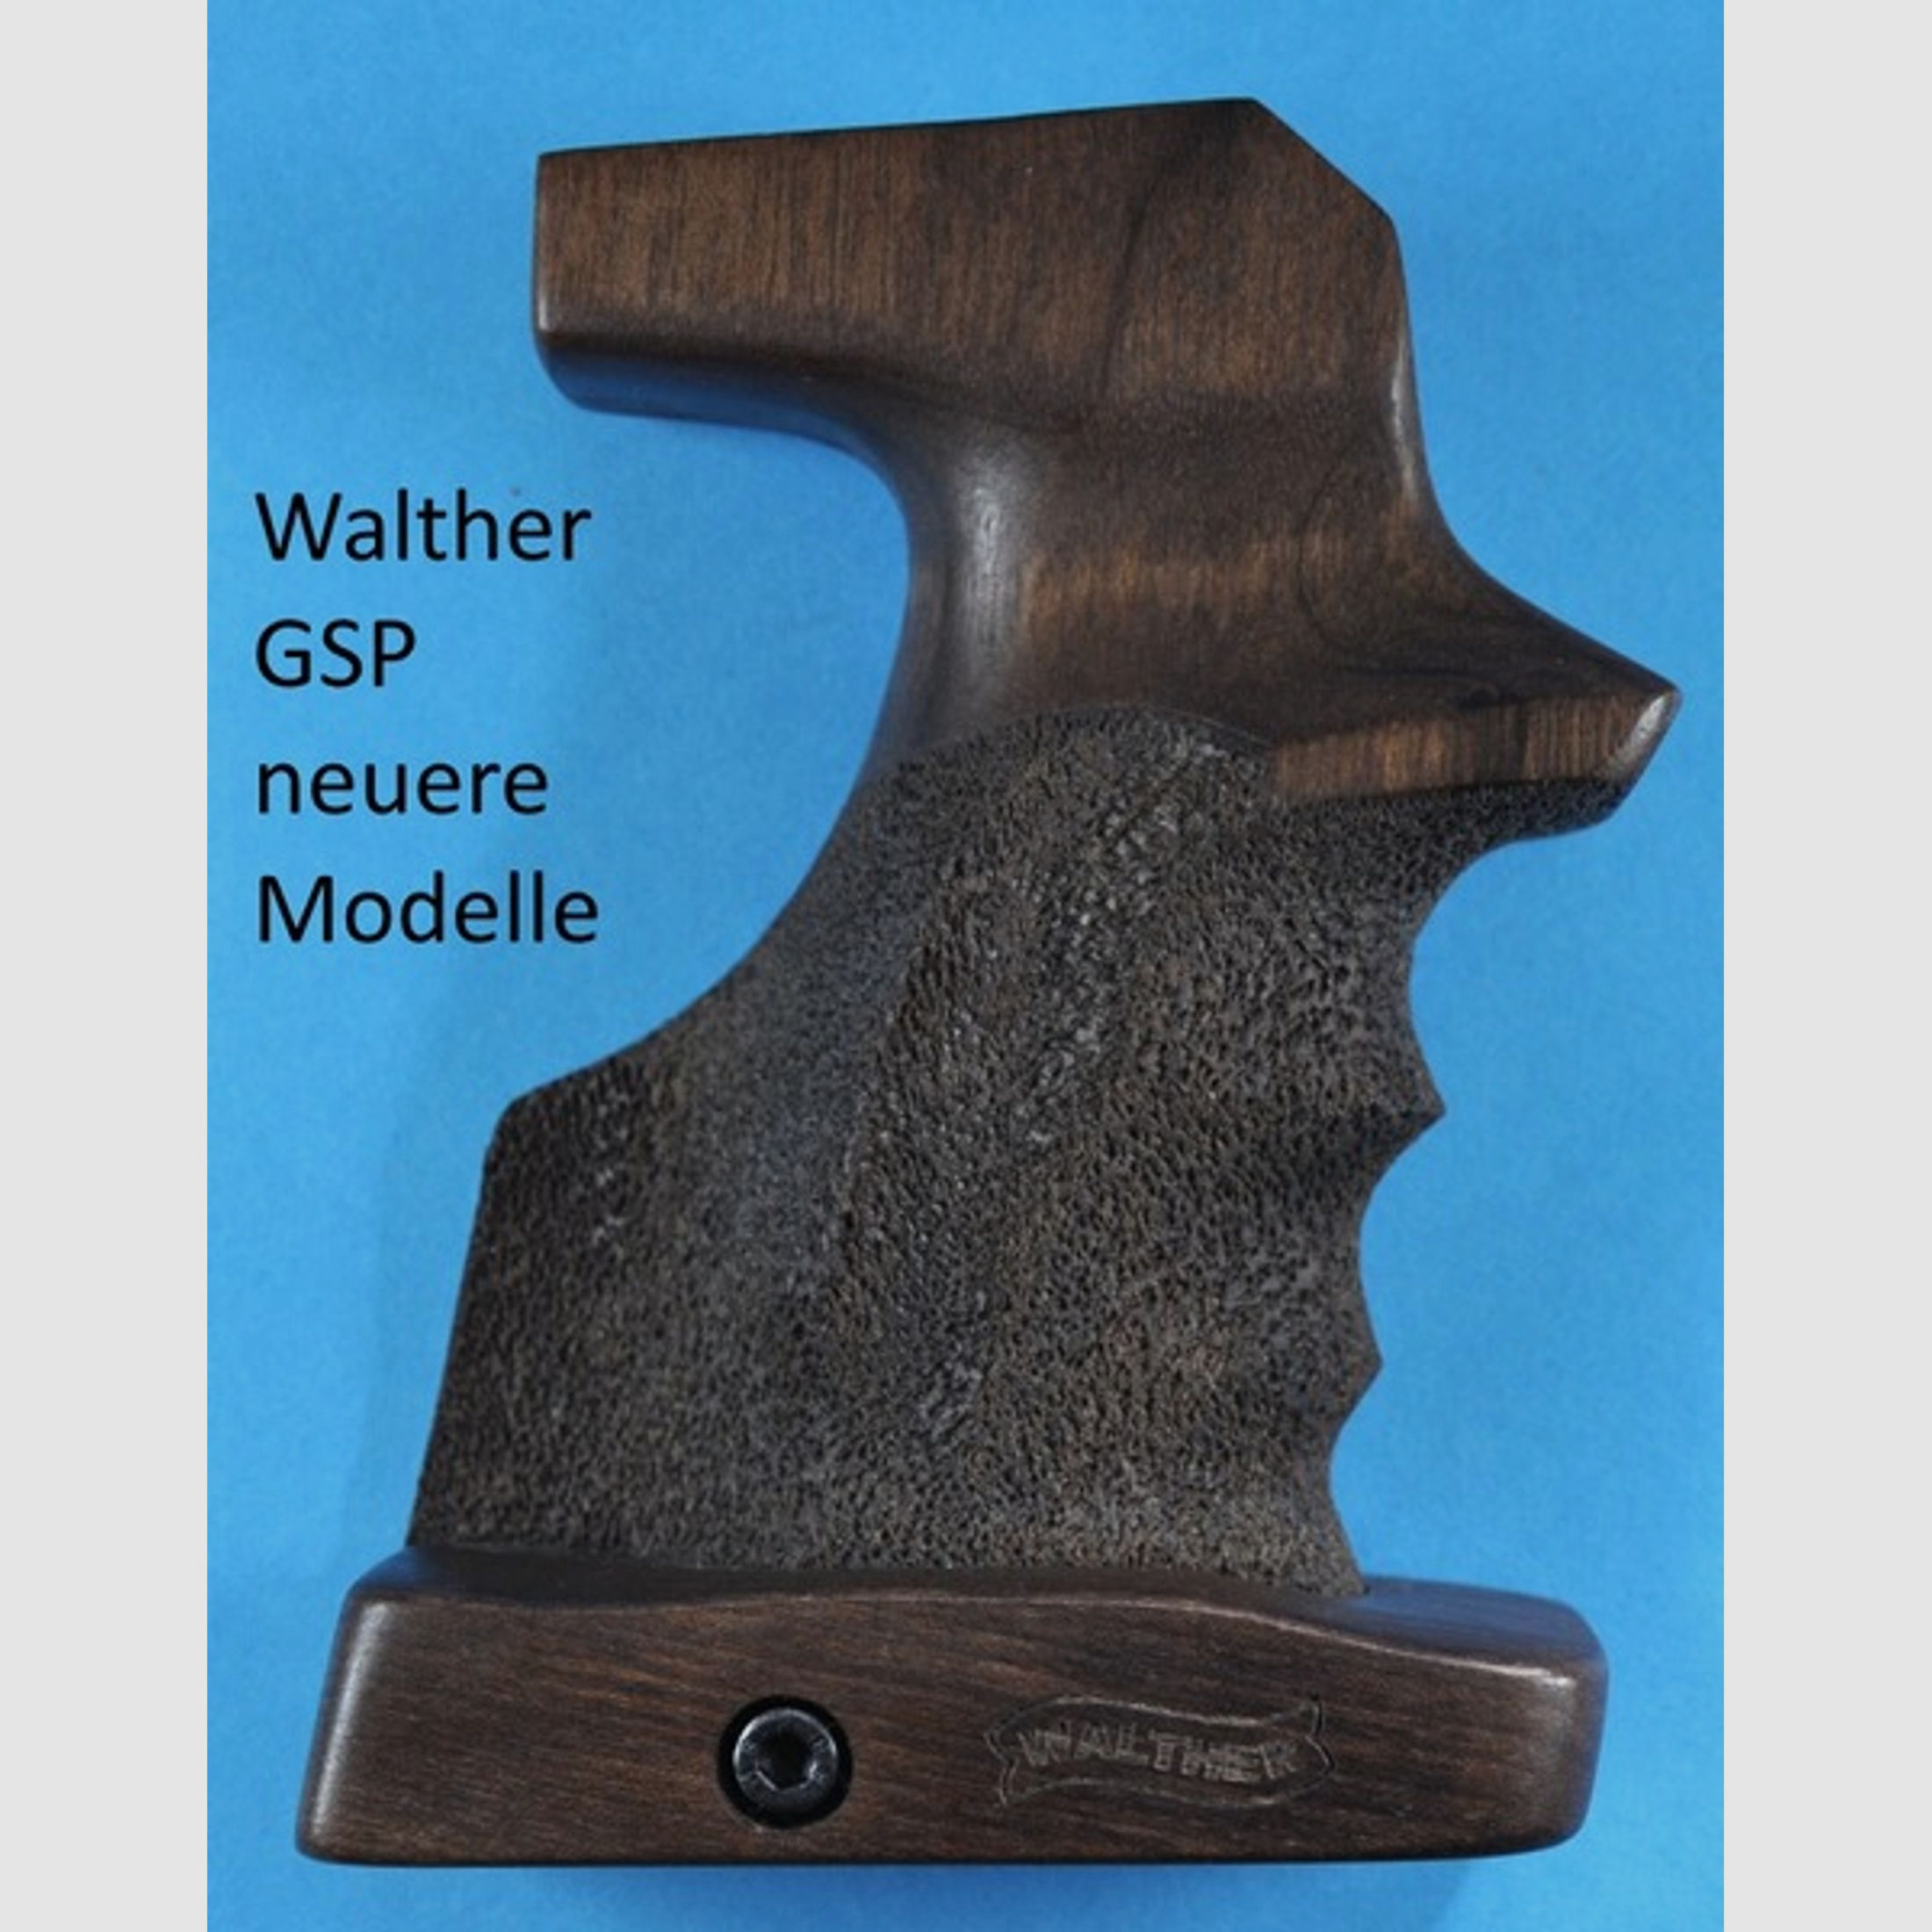 Nussbau-Sportgriff für Pistole Walther GSP (neuere Modelle)